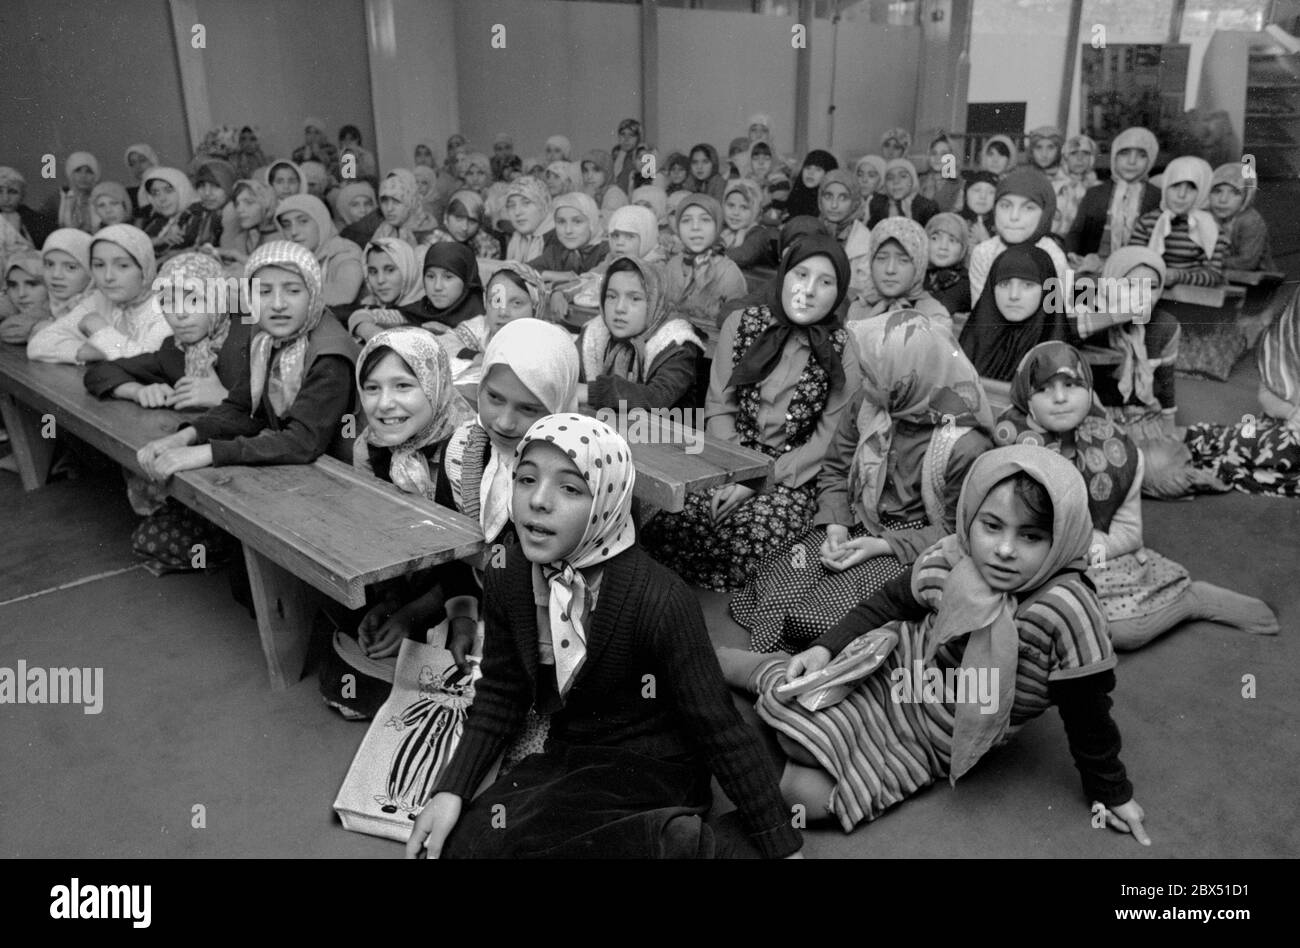 Berlin-Kreuzberg / Islam / 26.9.1980 leçons du Coran pour les filles dans la mosquée Mevlana à Kottbusser Tor. Un Hodscha (professeur) lit des passages du Coran et les enfants les répètent. // foulard / femmes / Turcs [traduction automatique] Banque D'Images